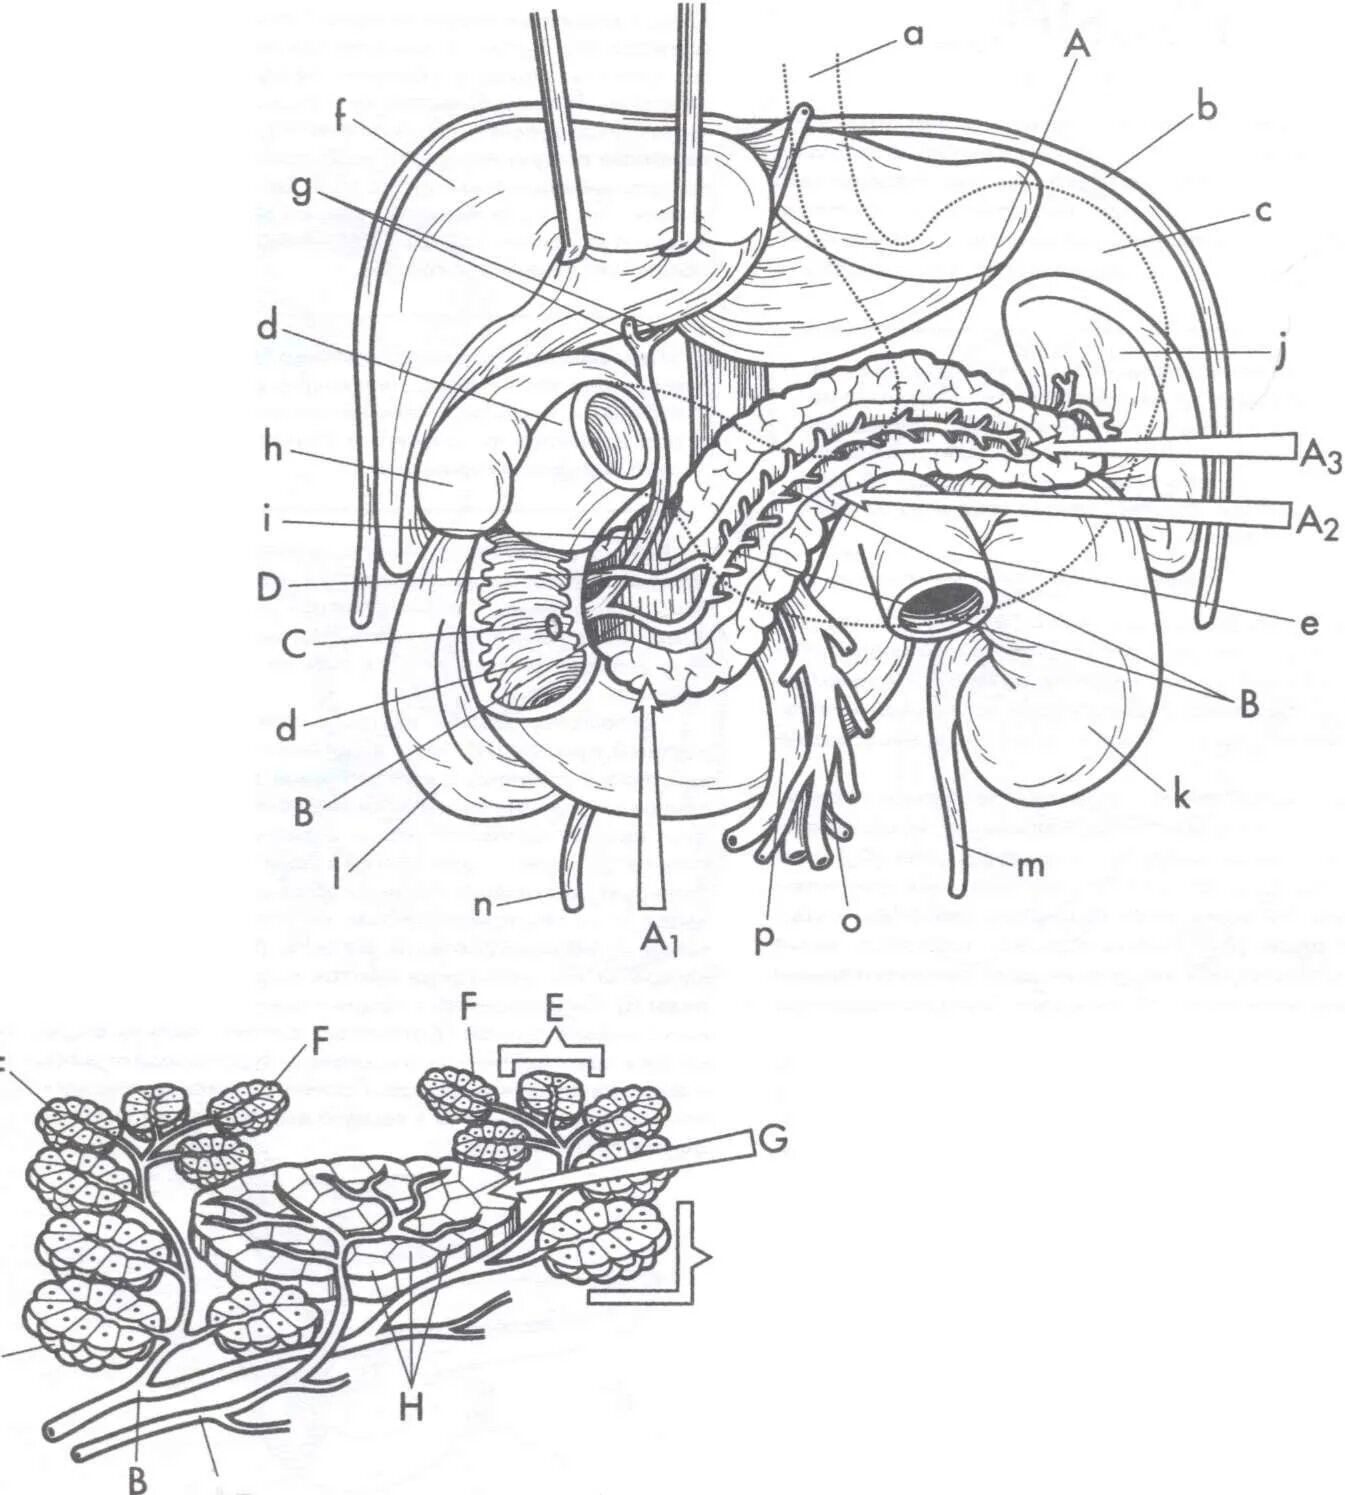 Железы пищеварительной системы анатомия. Строение пищеварительных желез человека. Органы и пищеварительные железы пищеварительного тракта рисунок 95. Функциональная анатомия больших пищеварительных желез. Больших пищеварительных желез